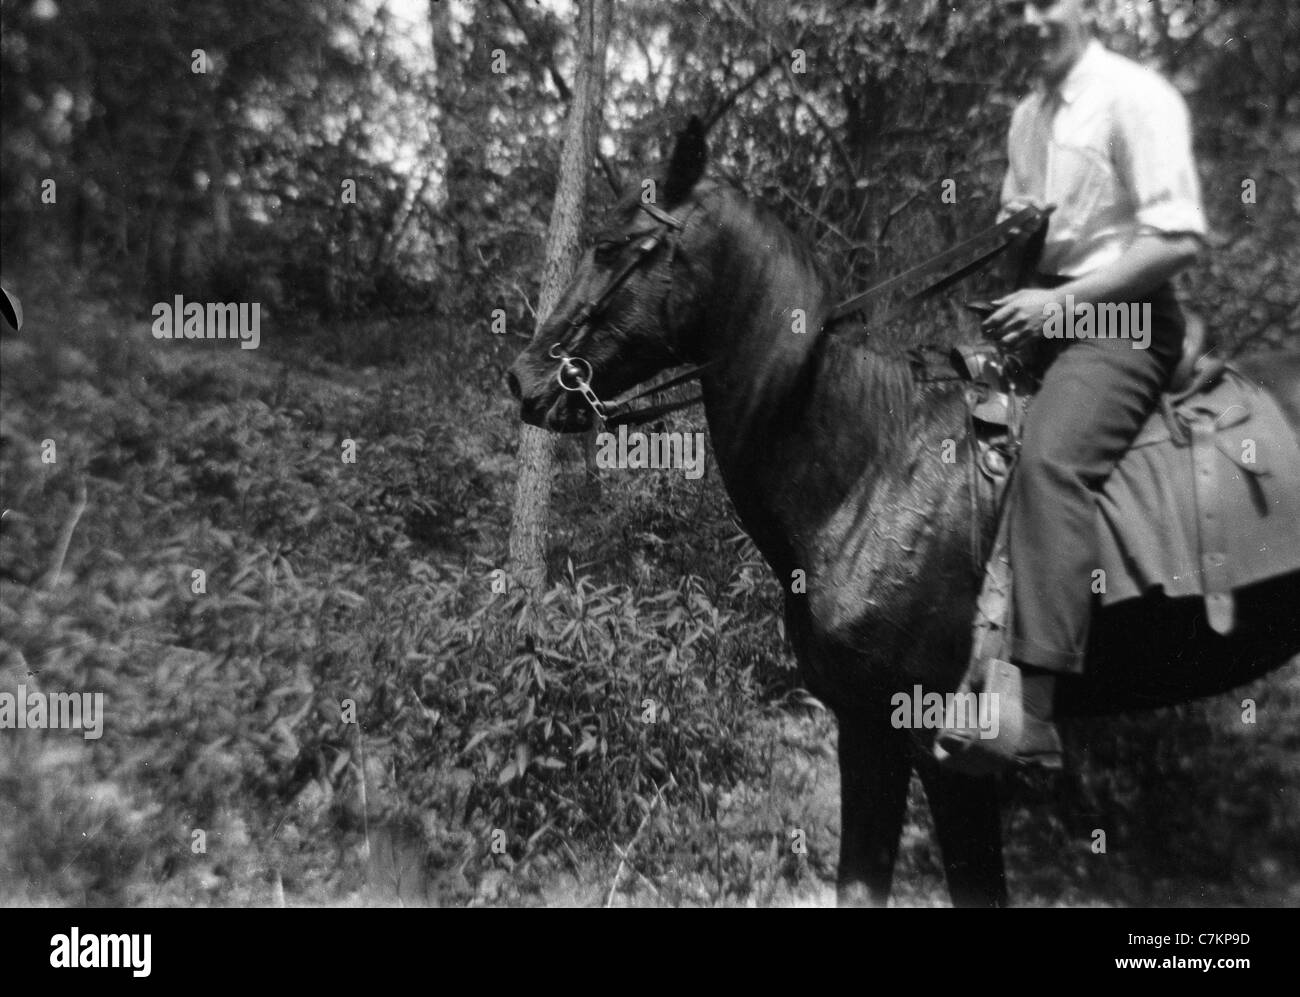 El hombre a caballo fondo borroso misterio masculino de la selva rural 1930 Foto de stock